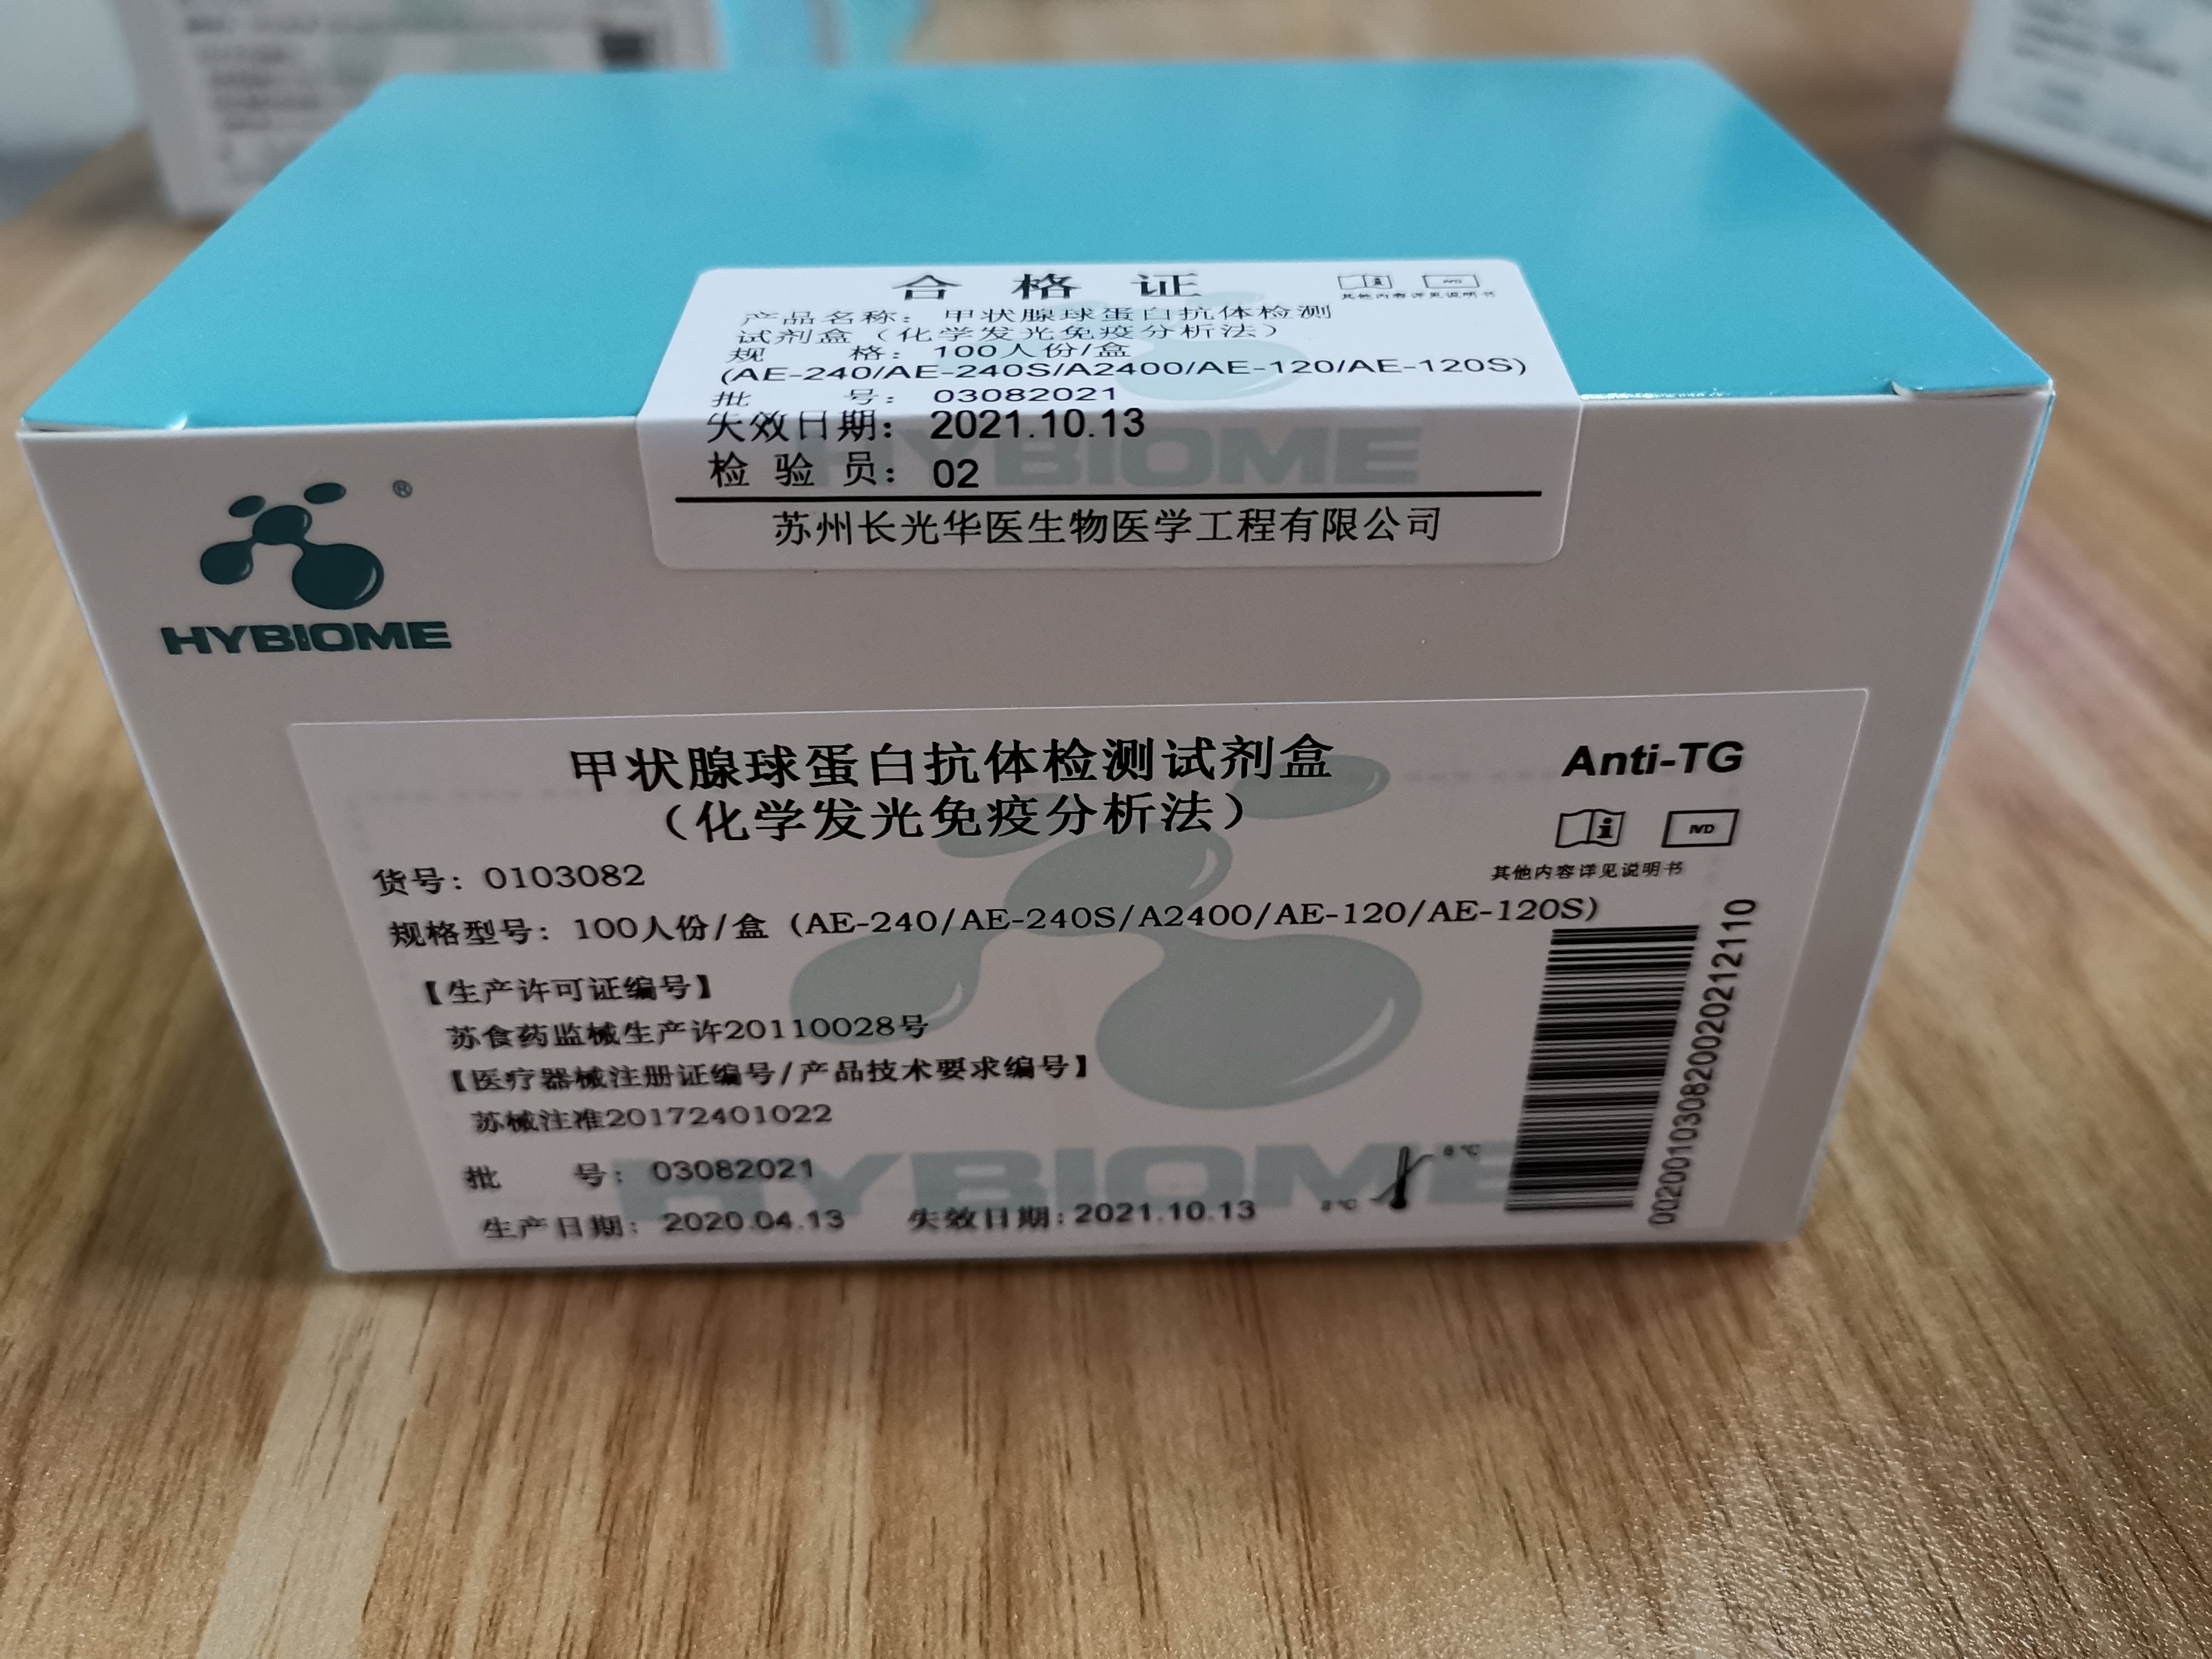 【长光华医】甲状腺球蛋白抗体检测试剂盒（化学发光免疫分析法）-云医购